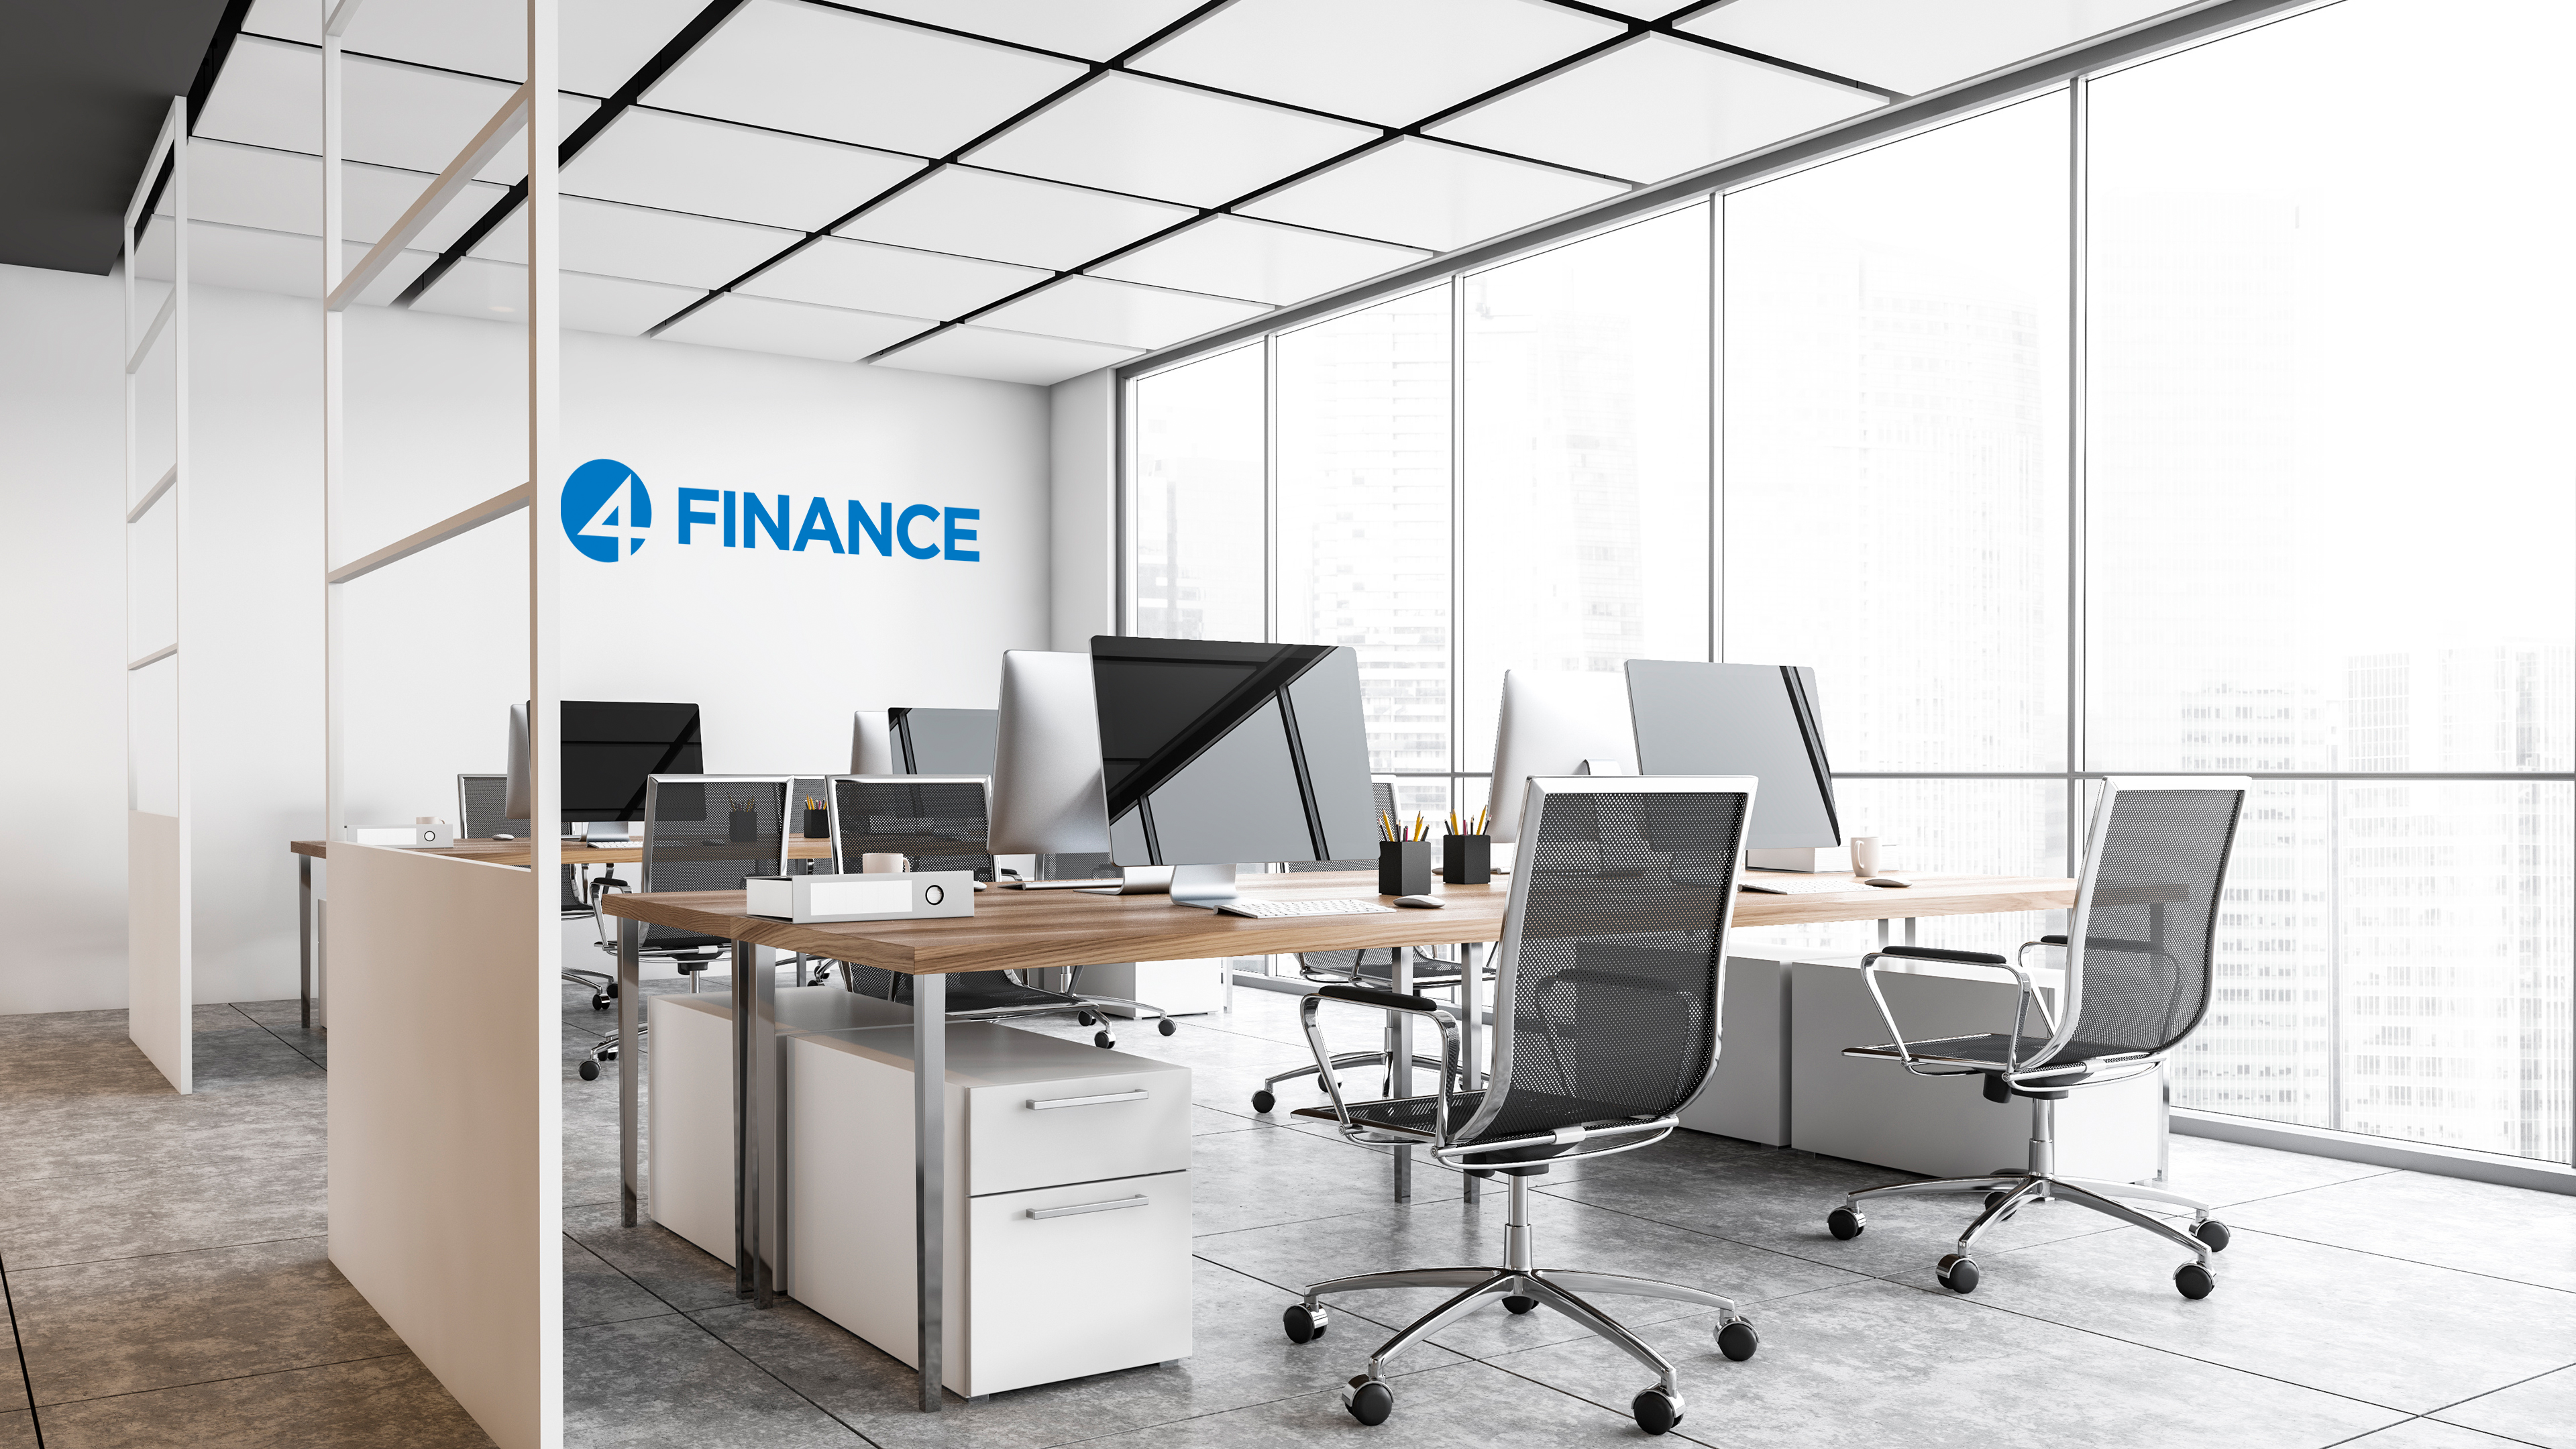 Finance Business Analyst